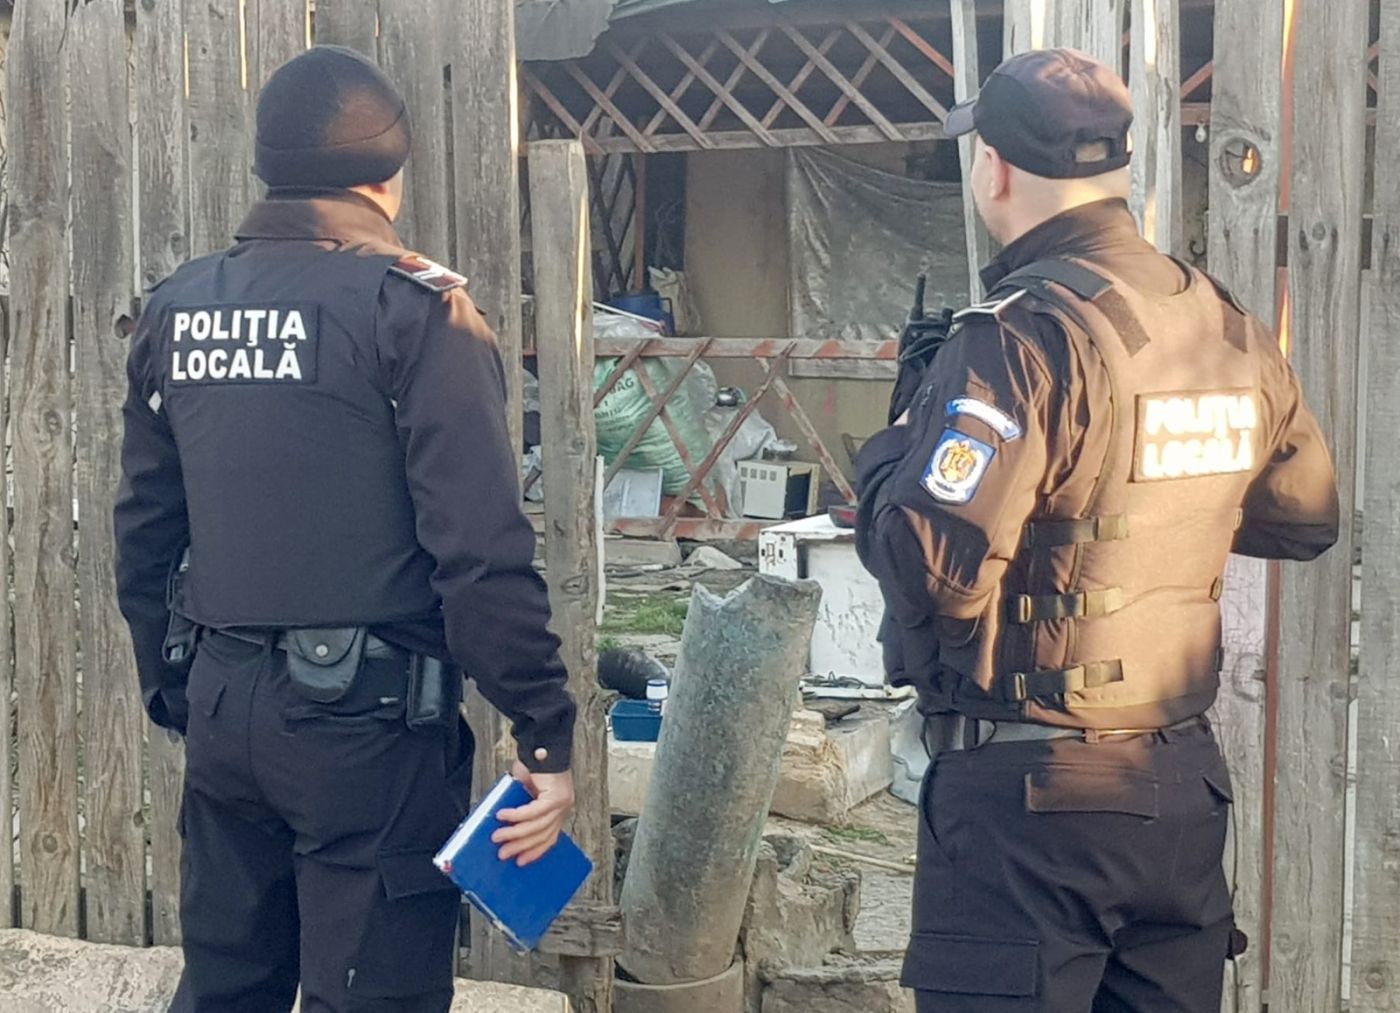 Polițiștii locali din Constanța au dat amenzi pentru neînscrierea în cartea de imobil, amplasarea ilegală a corturilor, înjurături și aruncarea de gunoaie